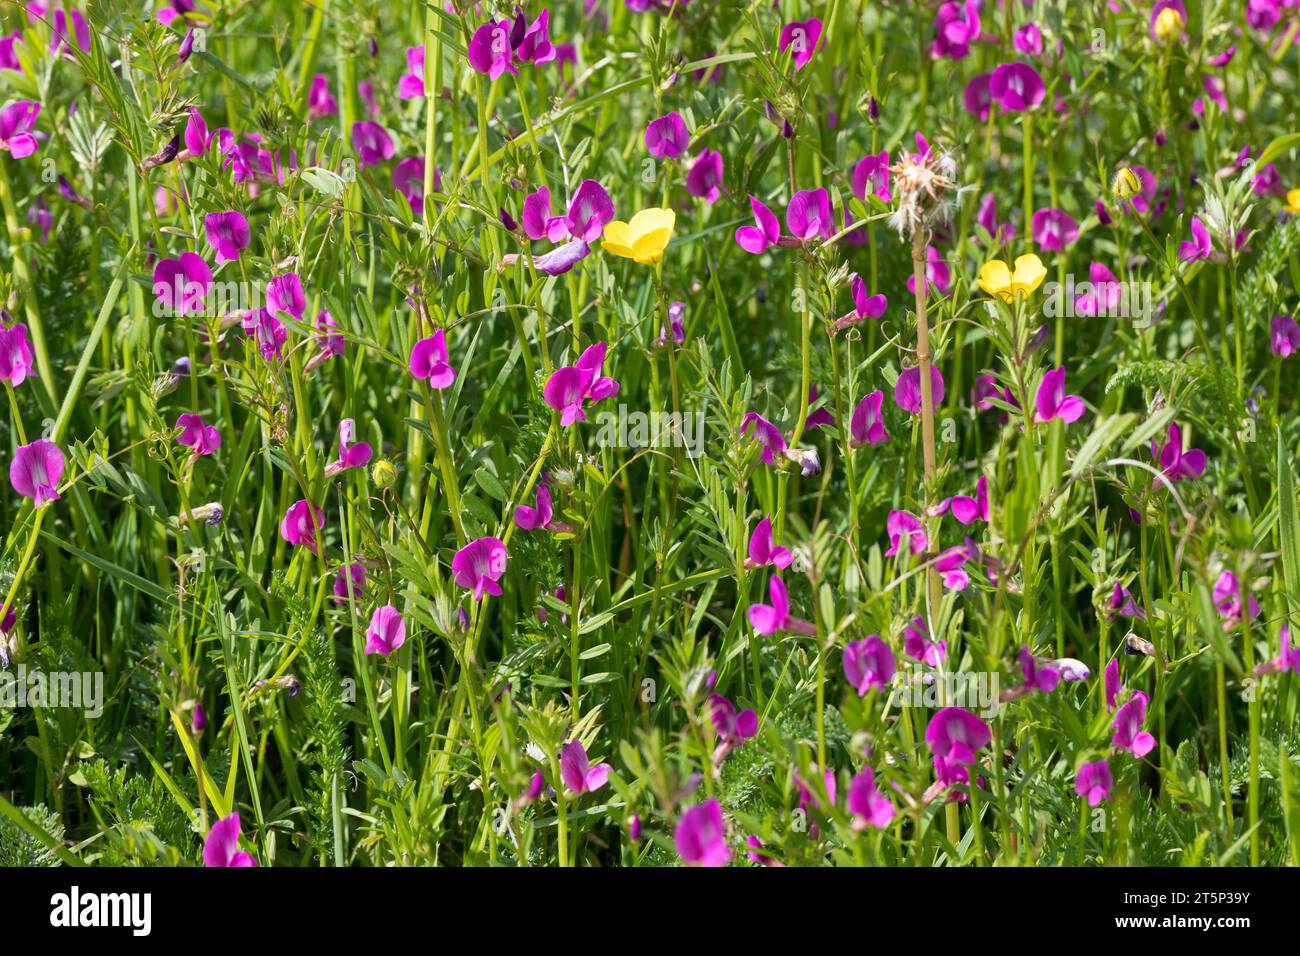 Saat-Wicke, Saatwicke, Futter-Wicke, Futterwicke, Vicia sativa, common vetch, garden vetch, tare, vetch Stock Photo